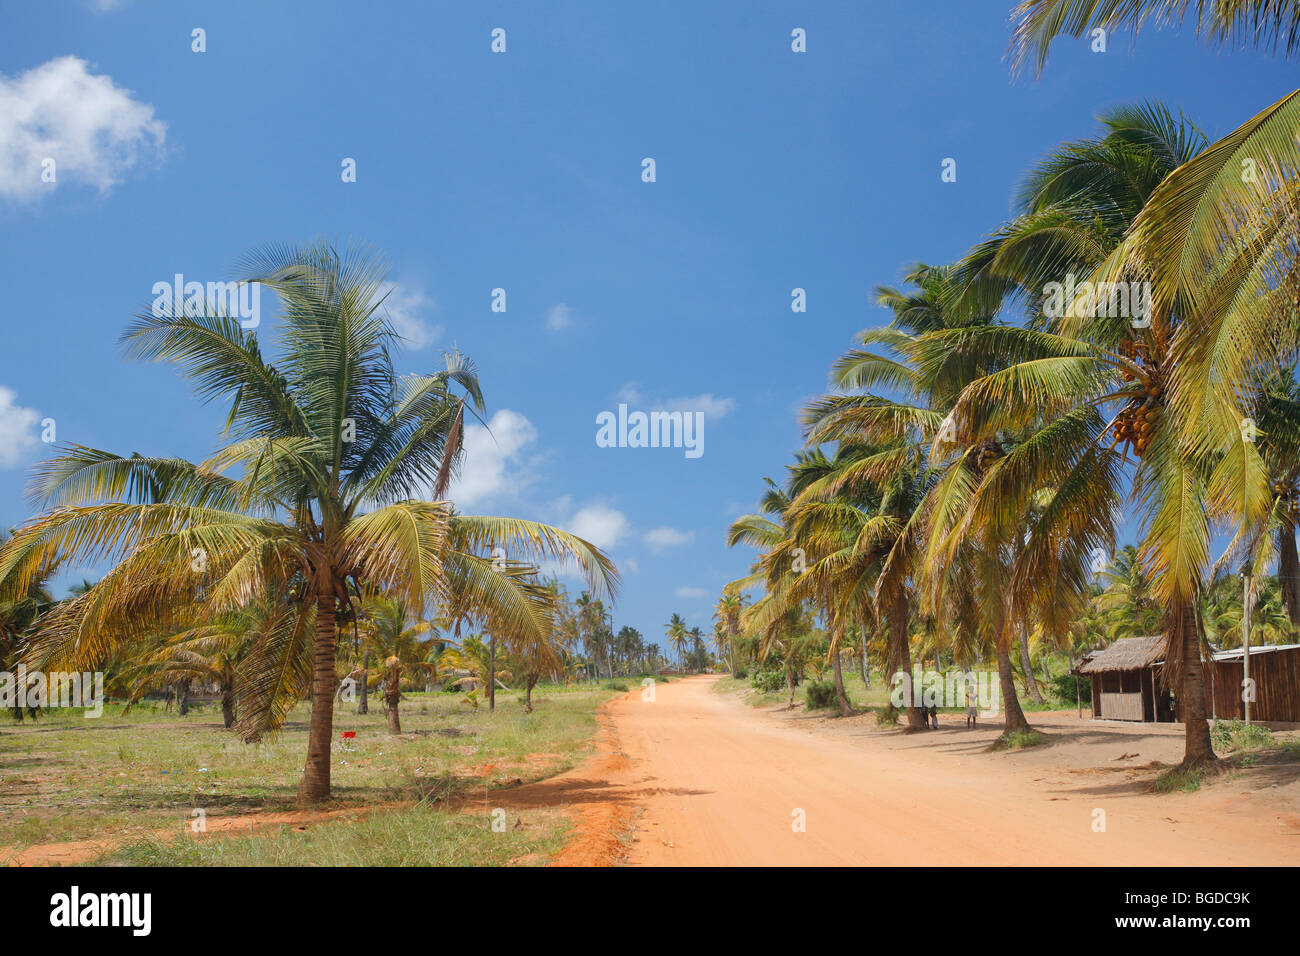 La route de tofo dans la province d'Inhambane, dans le sud du Mozambique, avec des cocotiers et les chemins de terre rouge caractéristique. Banque D'Images